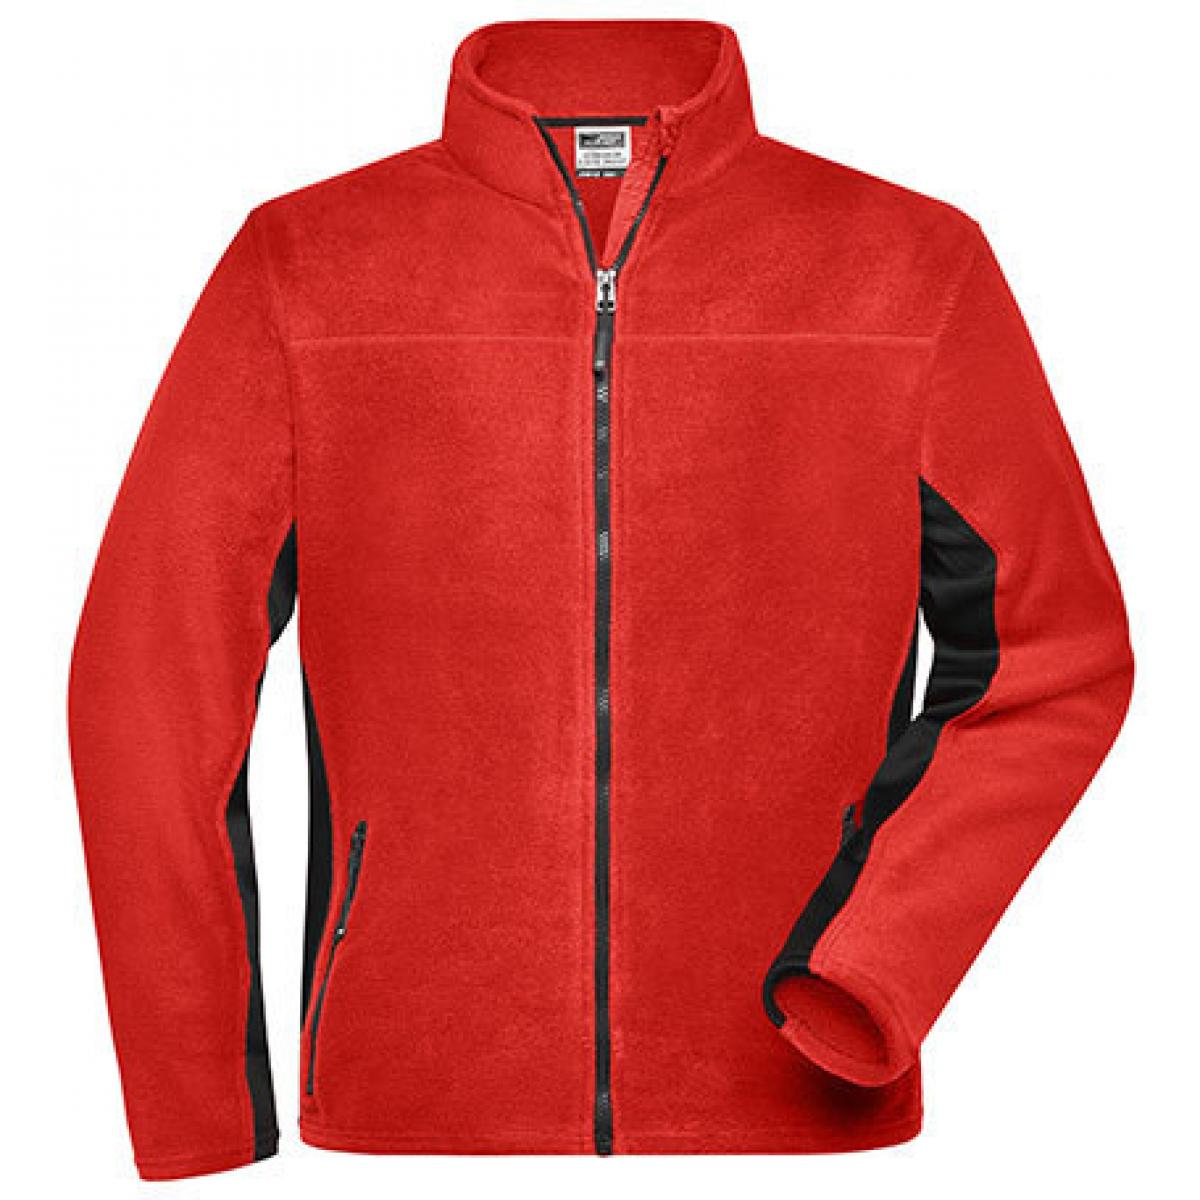 Hersteller: James+Nicholson Herstellernummer: JN842 Artikelbezeichnung: Herren Jacke, Men‘s Workwear Fleece Jacket -STRONG- Farbe: Red/Black